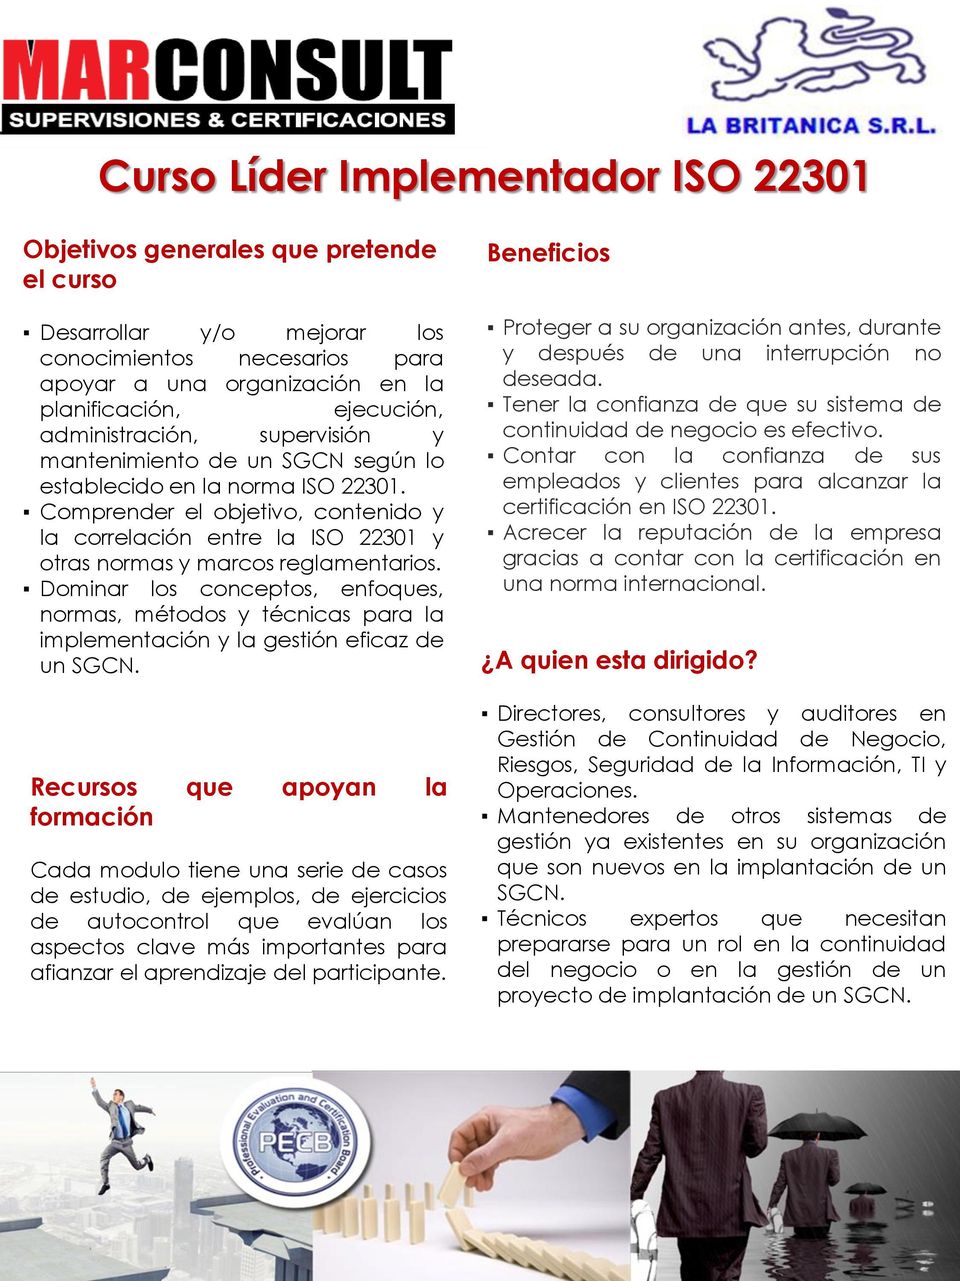 Comprender el objetivo, contenido y la correlación entre la ISO 22301 y otras normas y marcos reglamentarios.